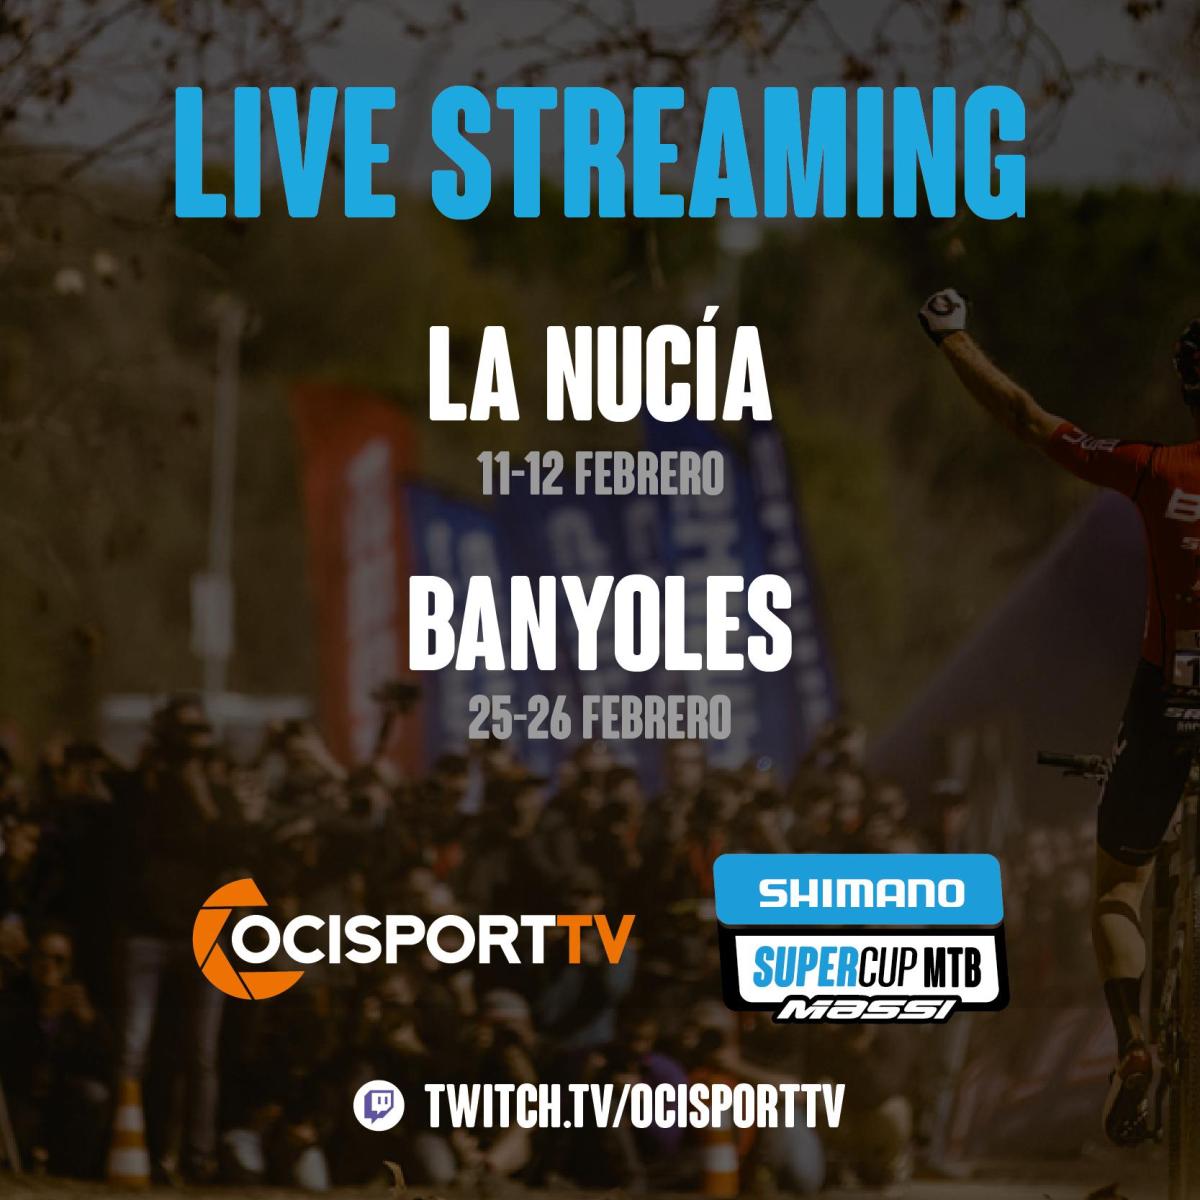 OcisportTV emitirá en directo las Shimano Super Cup Massi de La Nucía y Banyoles